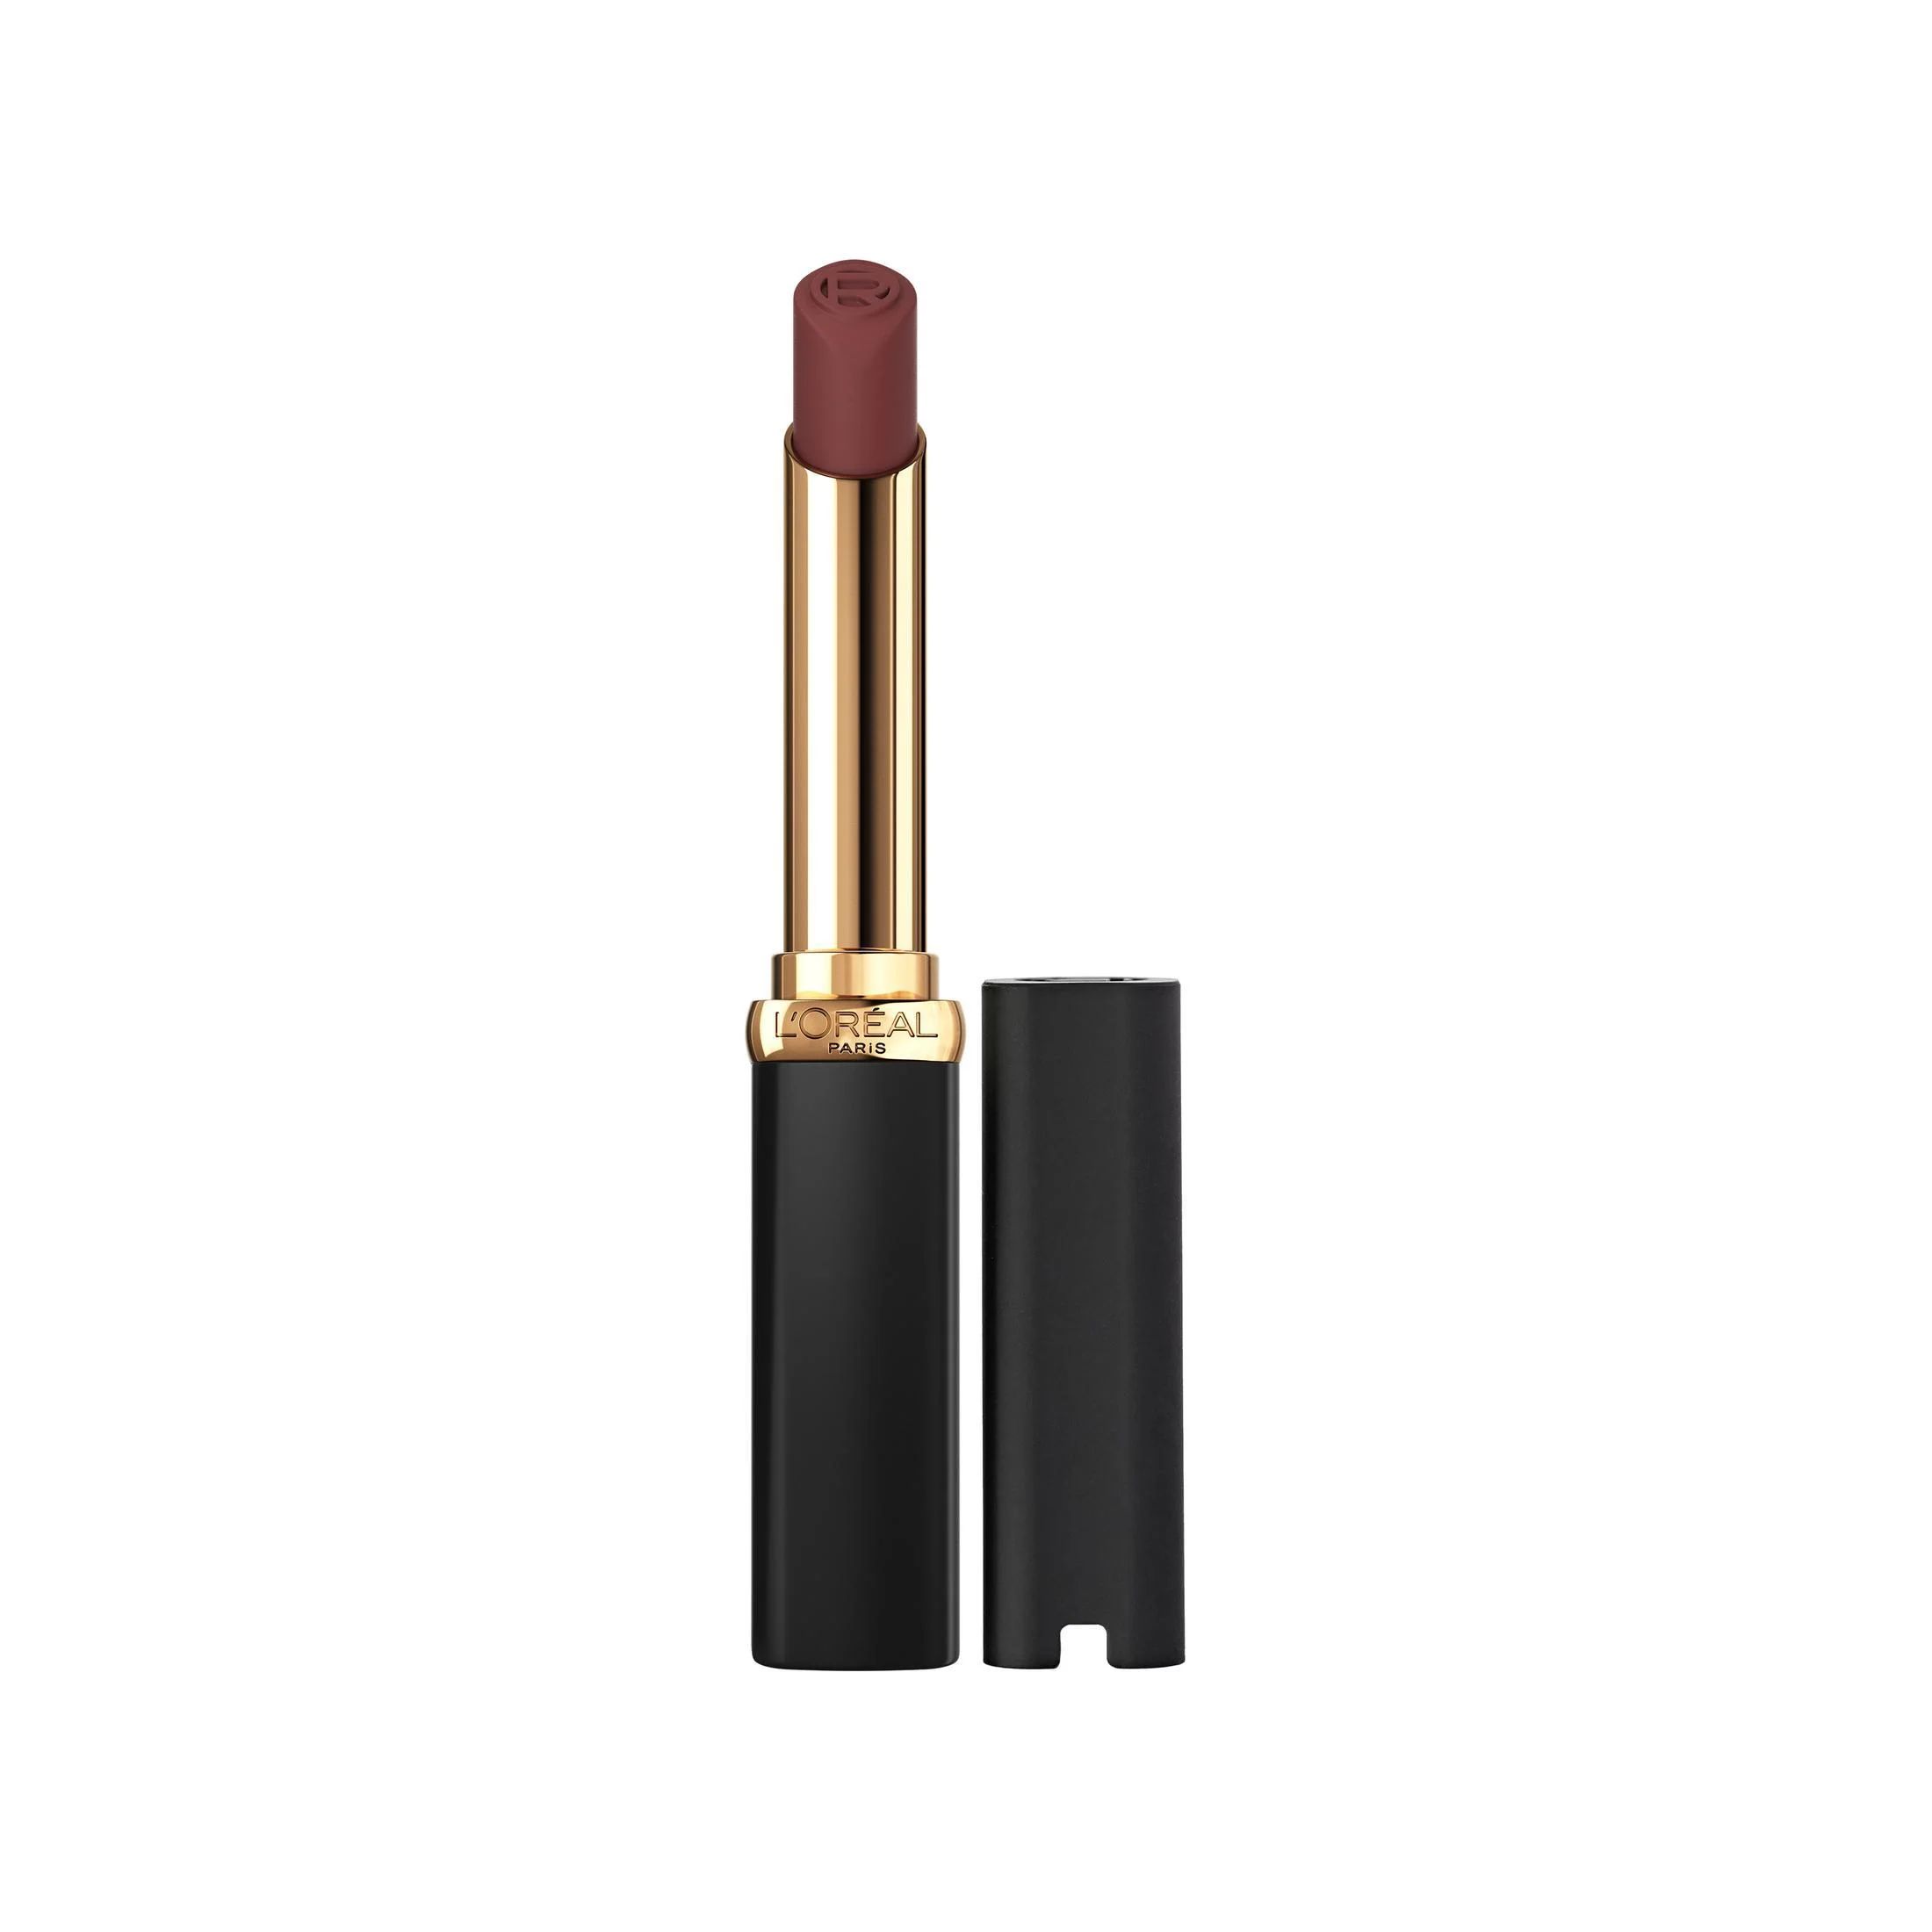 L'Oreal Paris Colour Riche Smudgeproof Intense Volume Matte Lipstick, 137 Le Nude Assertive | Walmart (US)